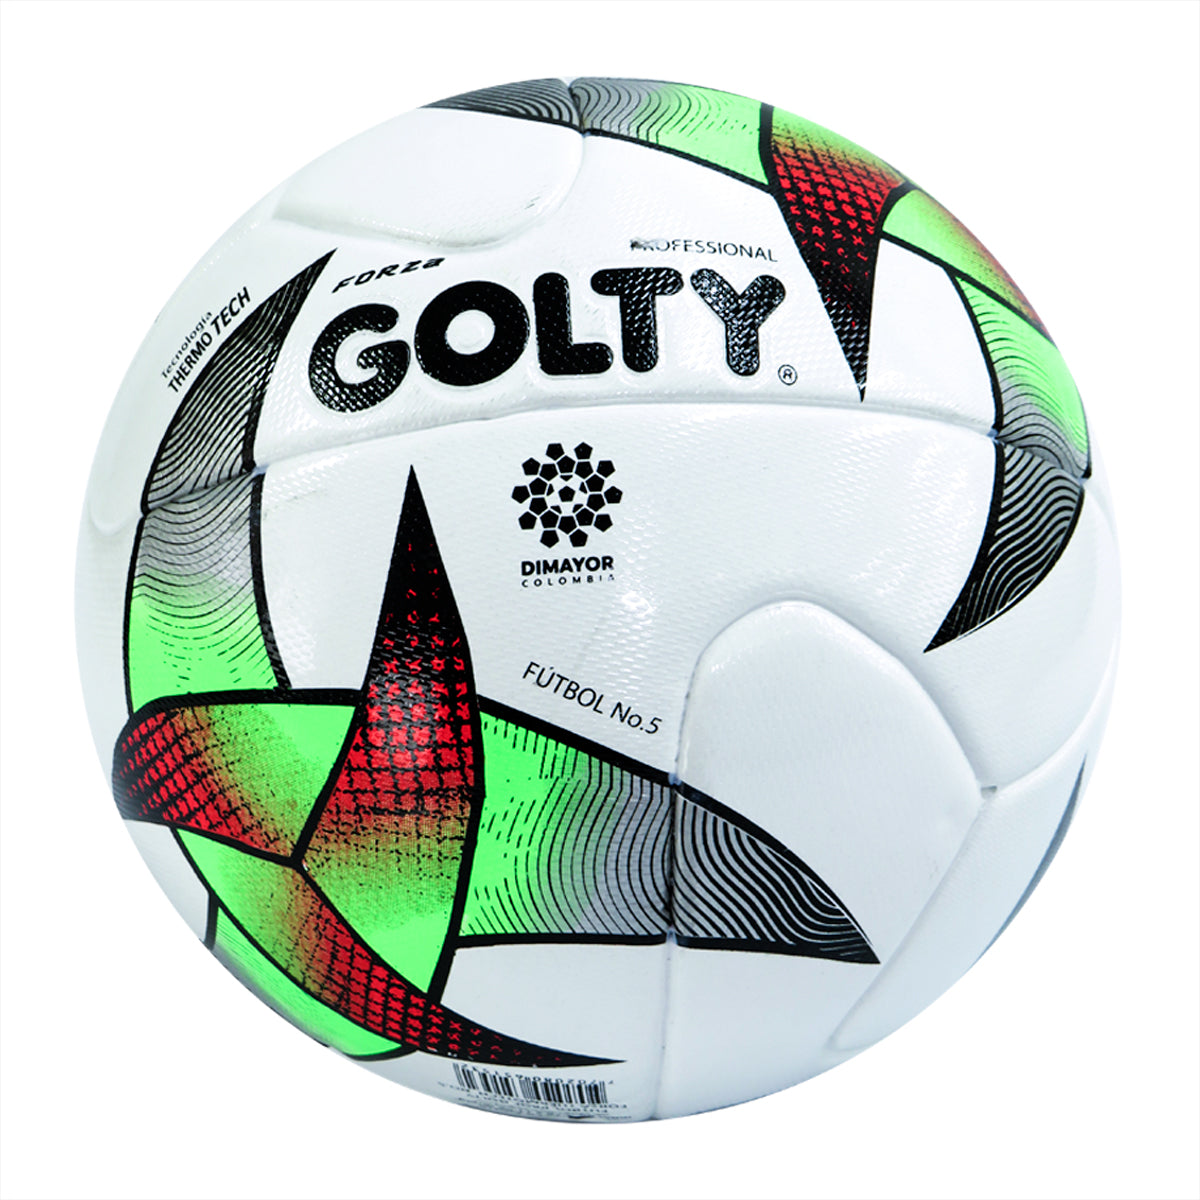 Balón Fútbol Golty Forza Prof. Thermotech